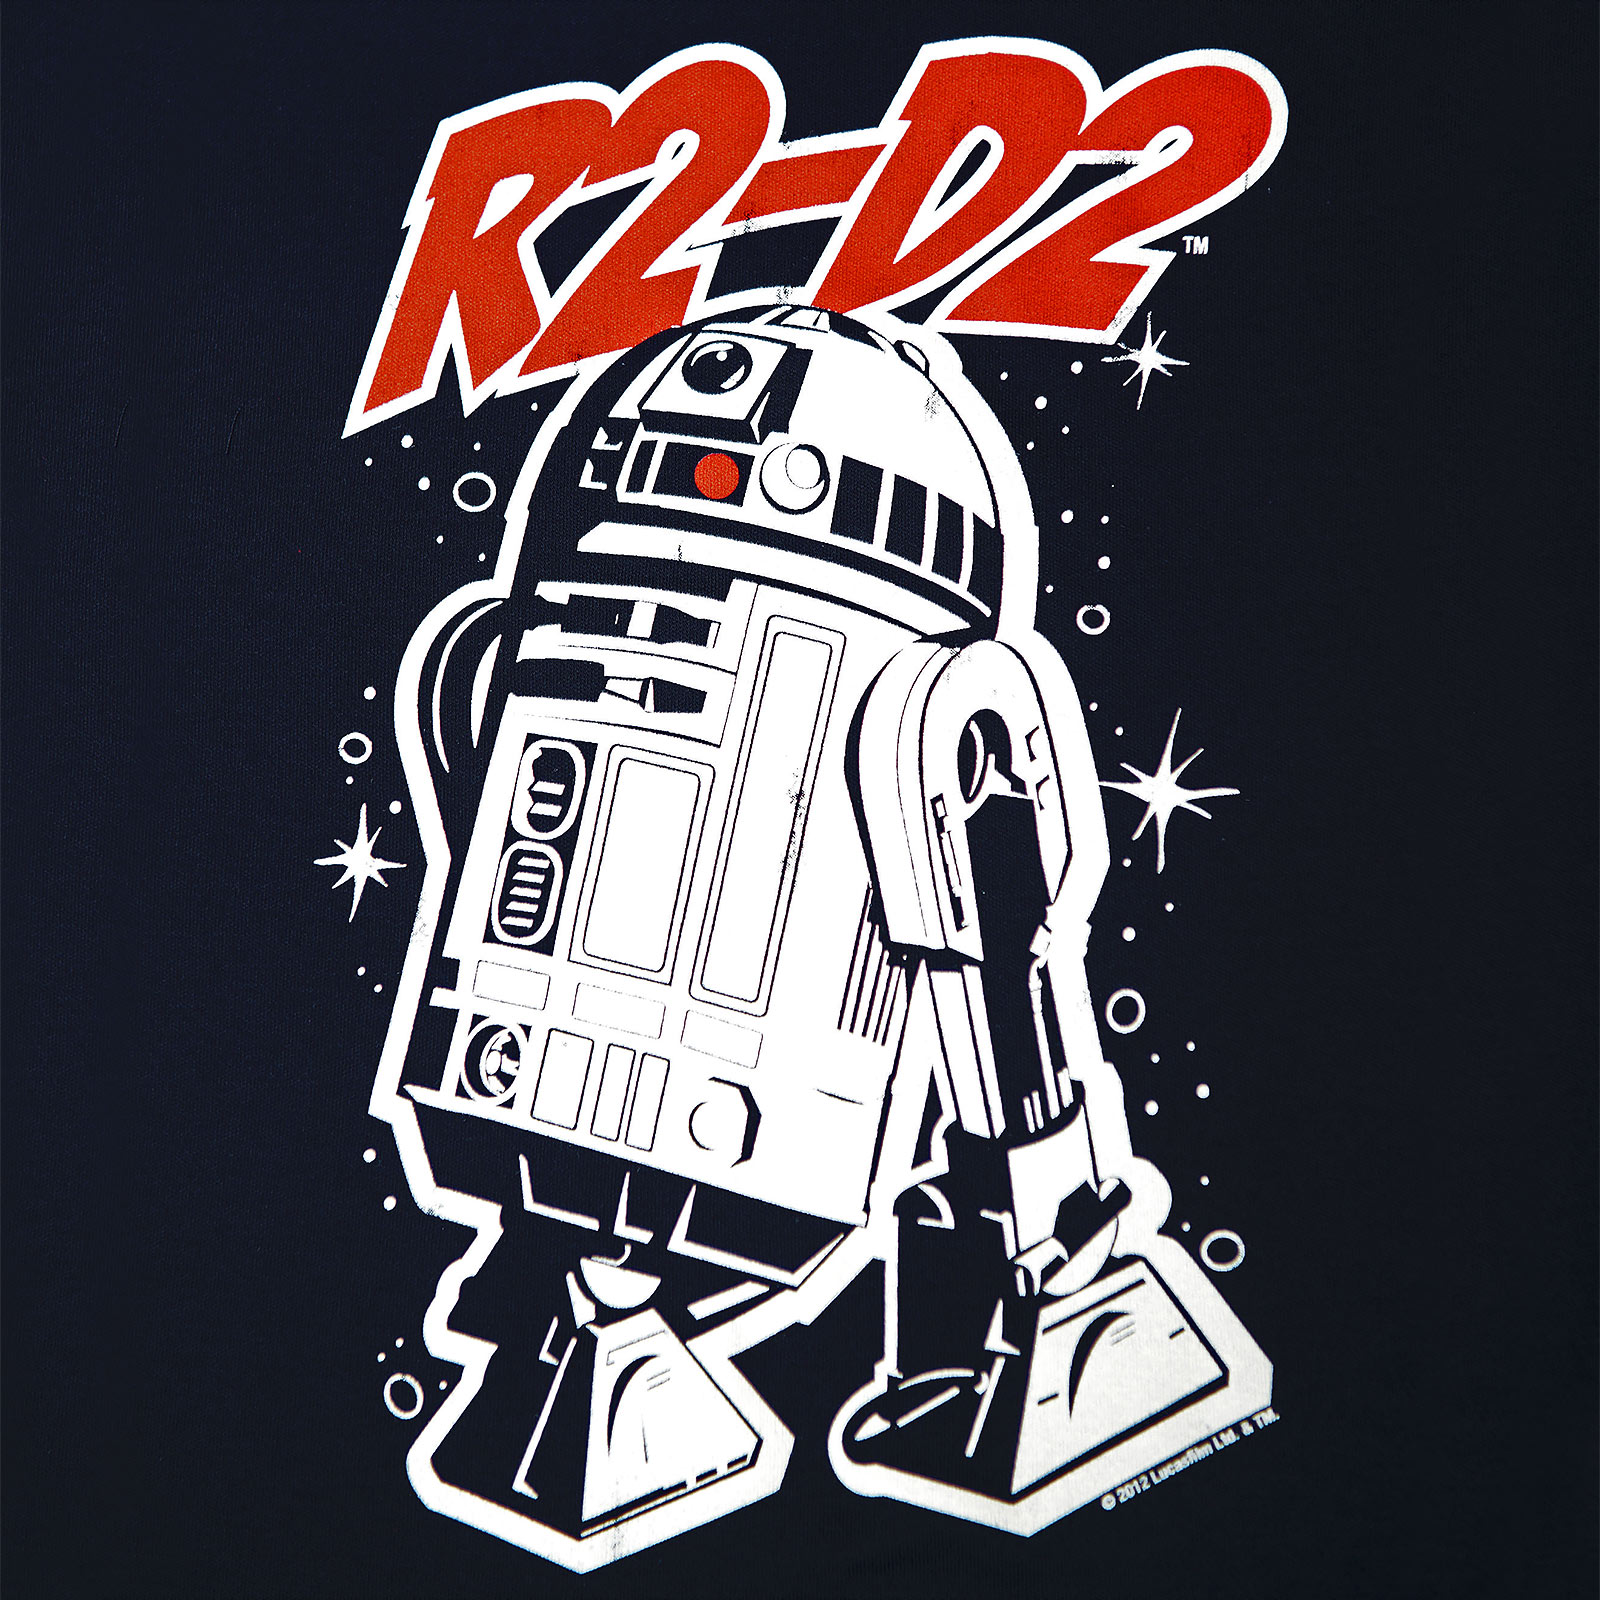 Star Wars - R2-D2 T-shirt enfant marine